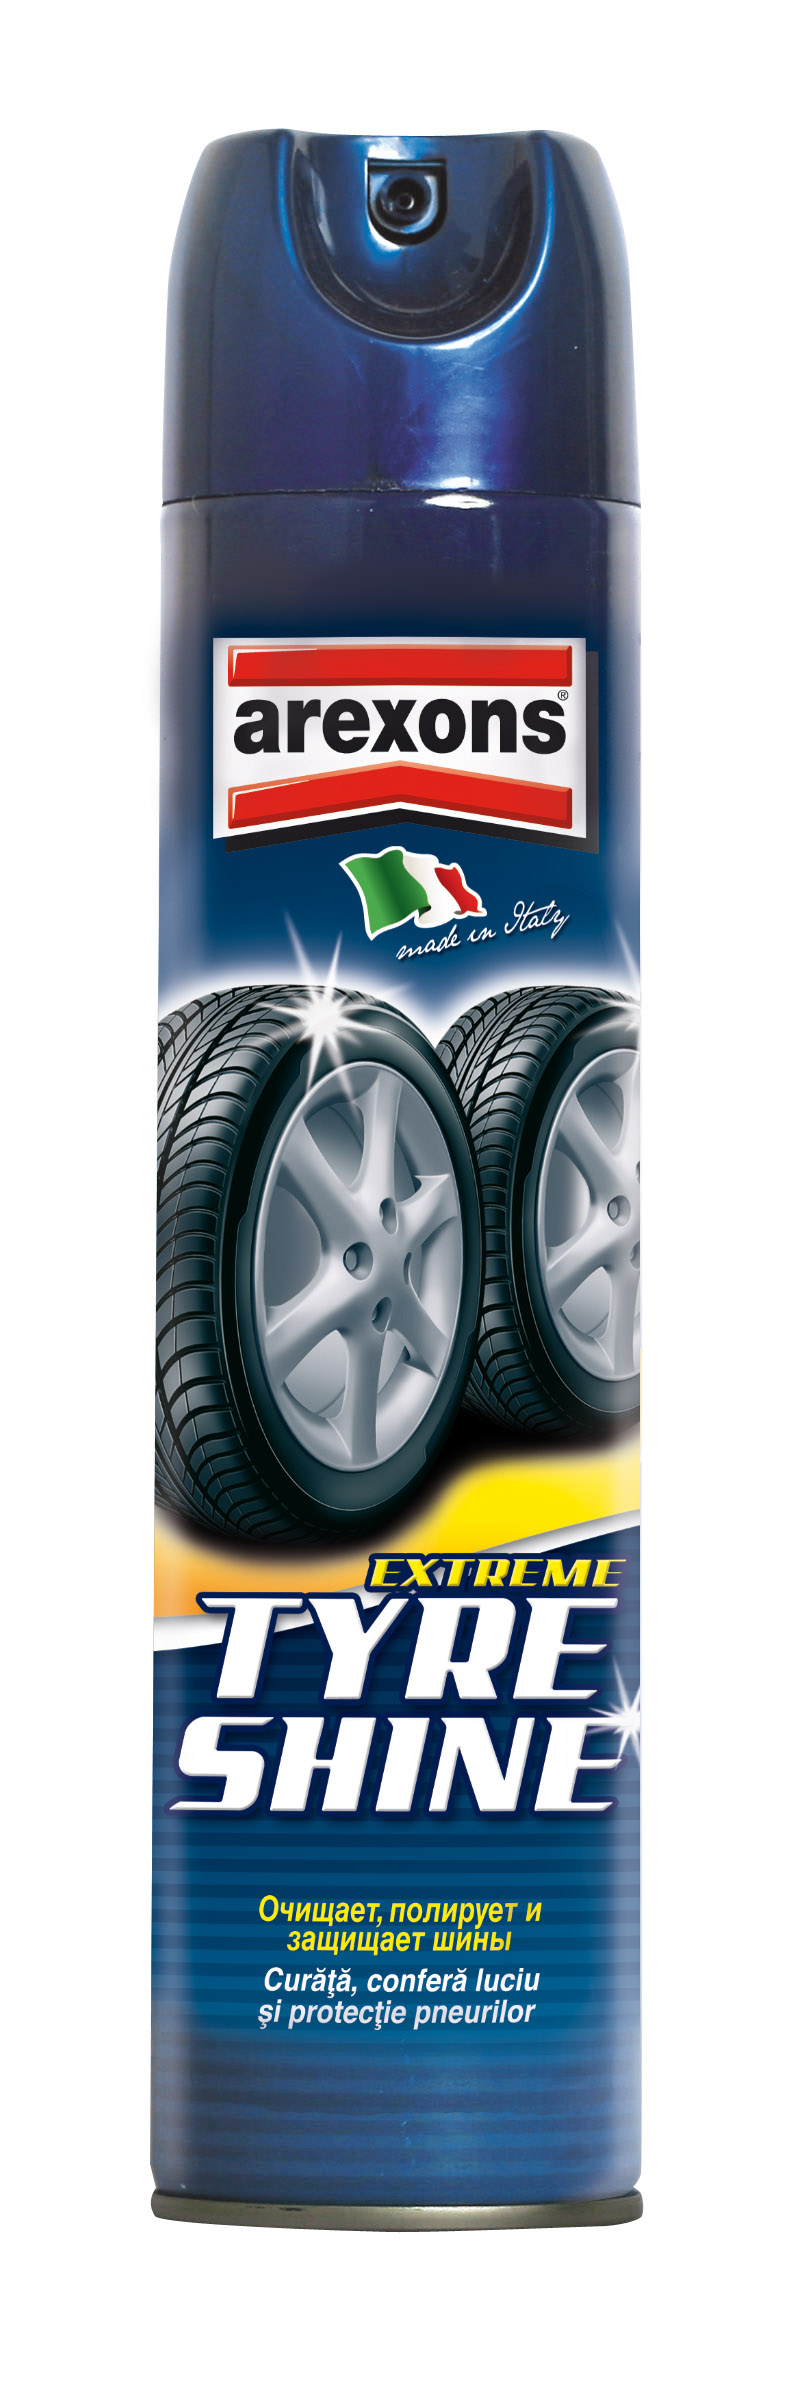 Очиститель и полироль шин (аэрозоль)AREXONS Extreme Tyre Shine  400 мл. 35020/7164